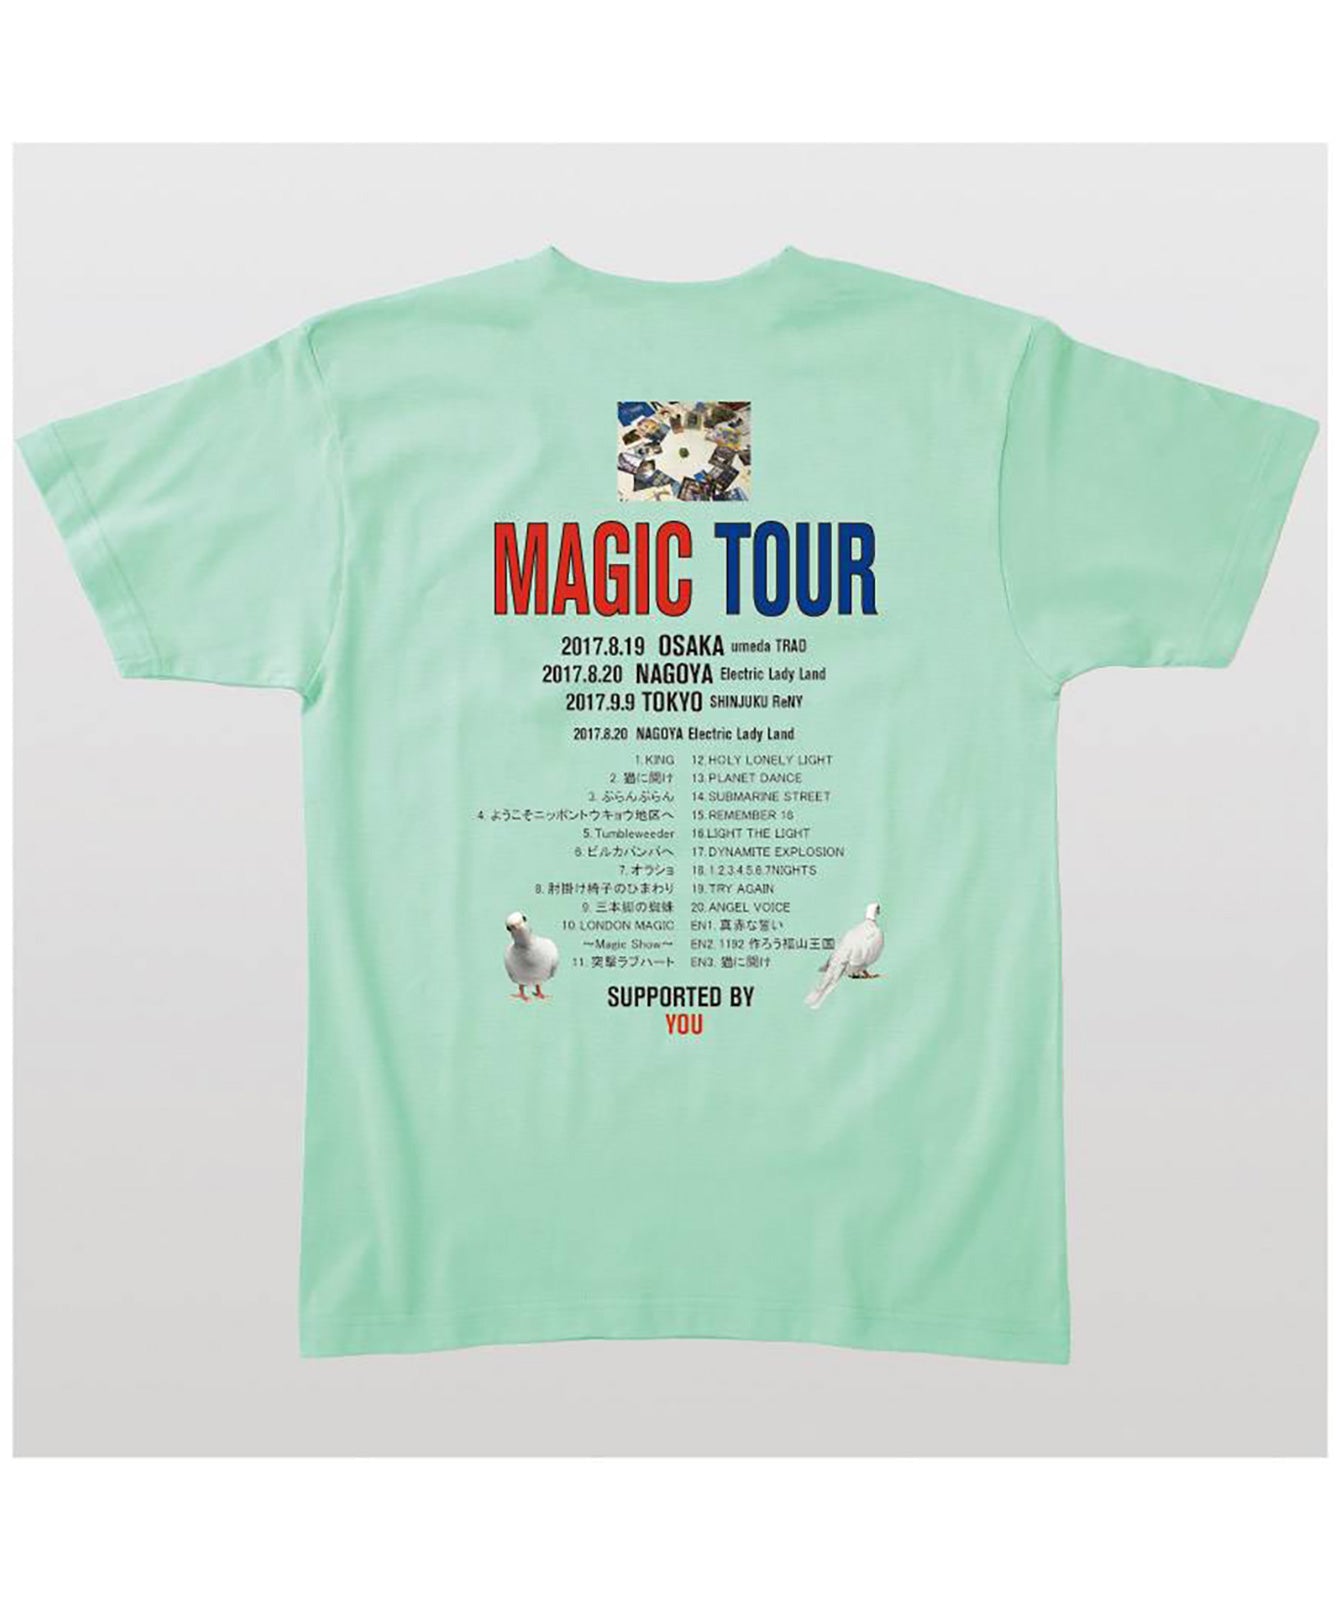 YOSHIKI FUKUYAMA 「MAGIC TOUR」名古屋